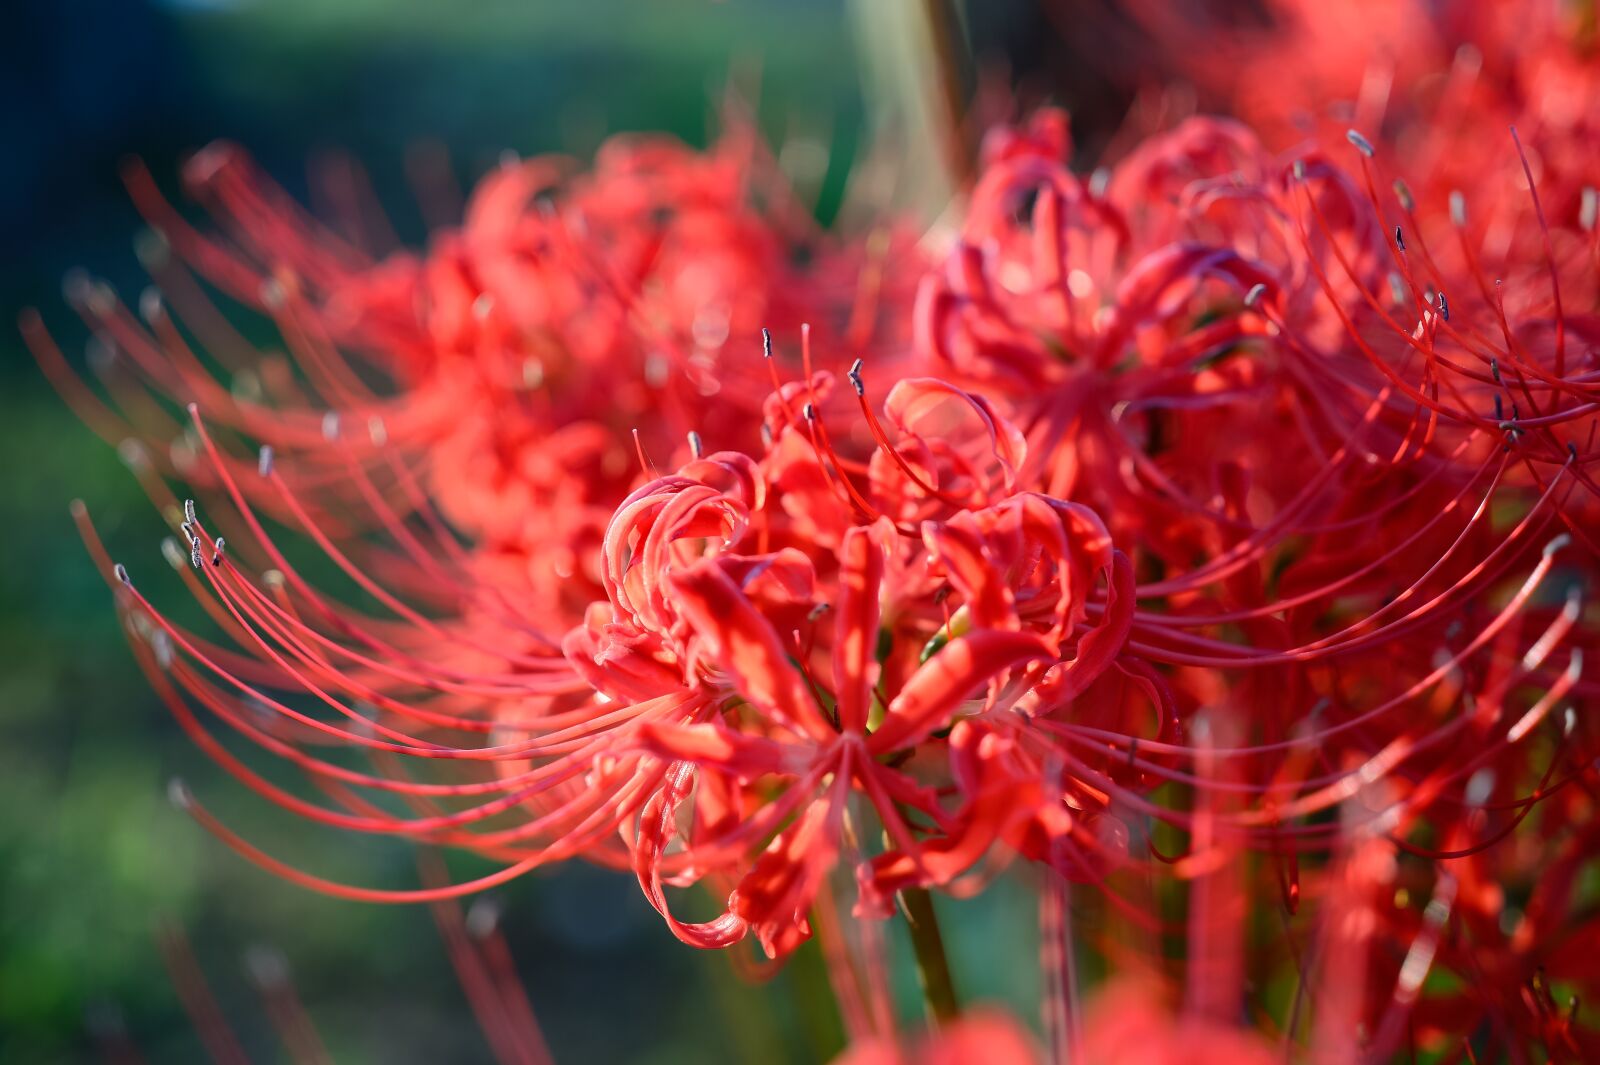 Nikon Df sample photo. Garden, flower, red spider photography